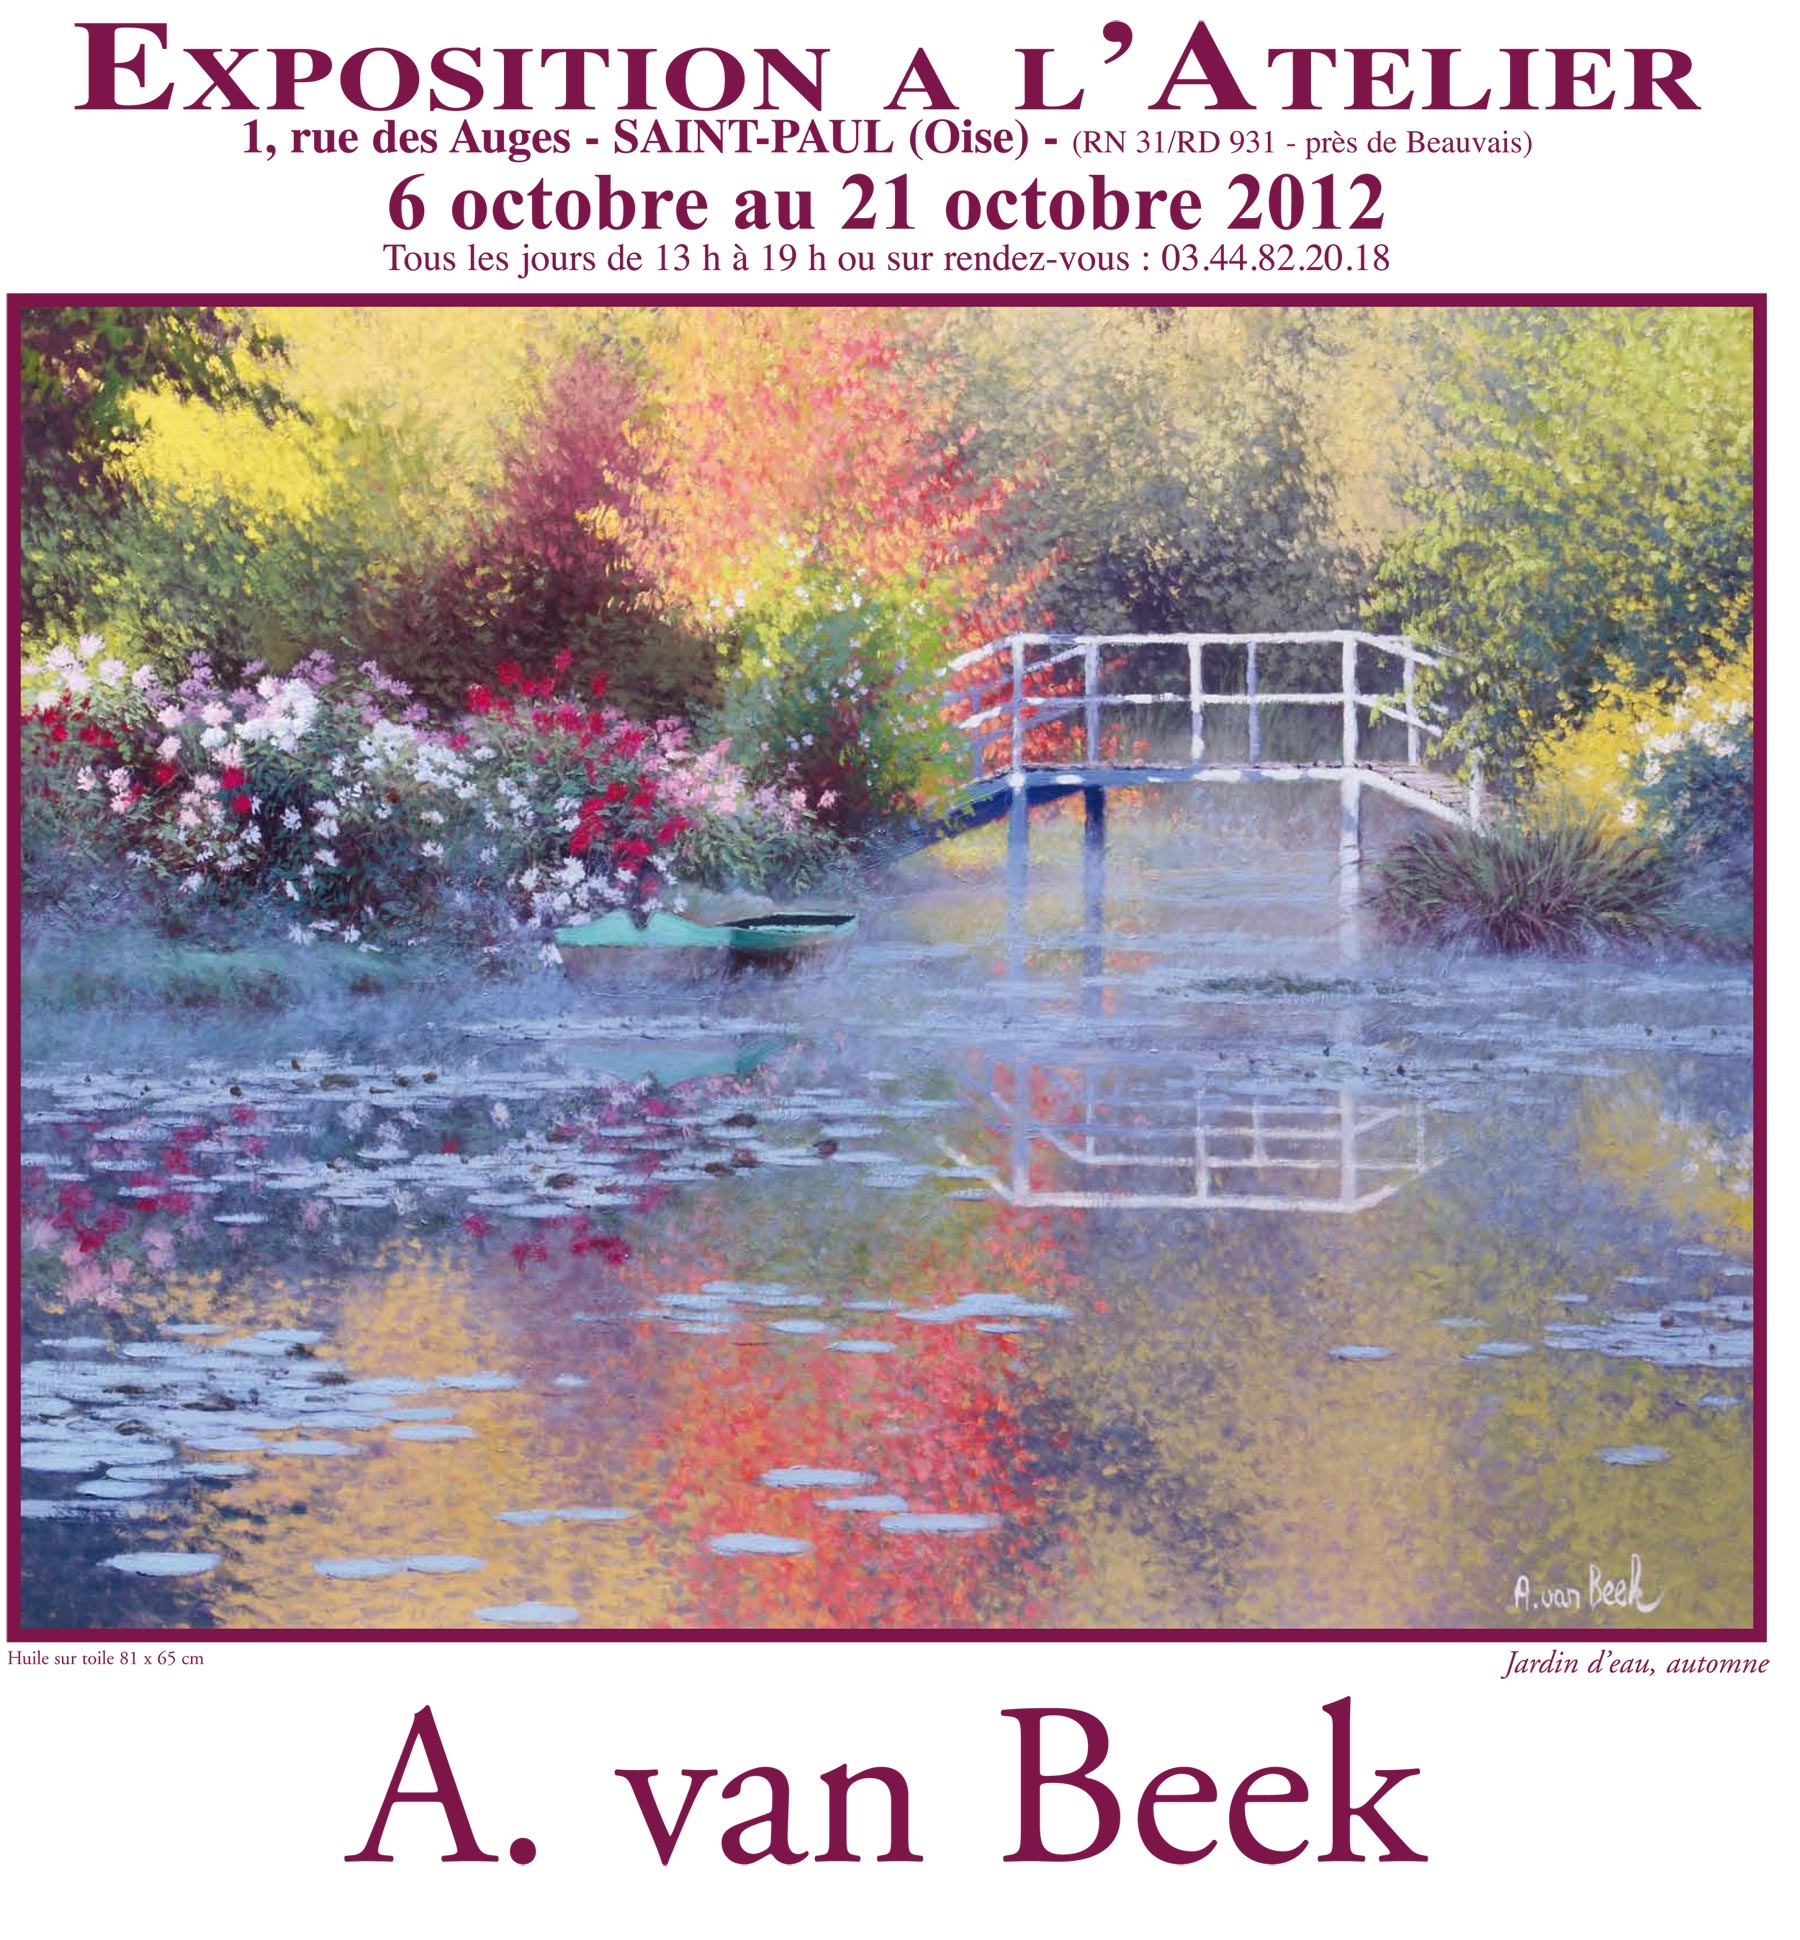 http://www.andrevanbeek.com/wp-content/uploads/2012/08/exposition-van-Beek2.jpg